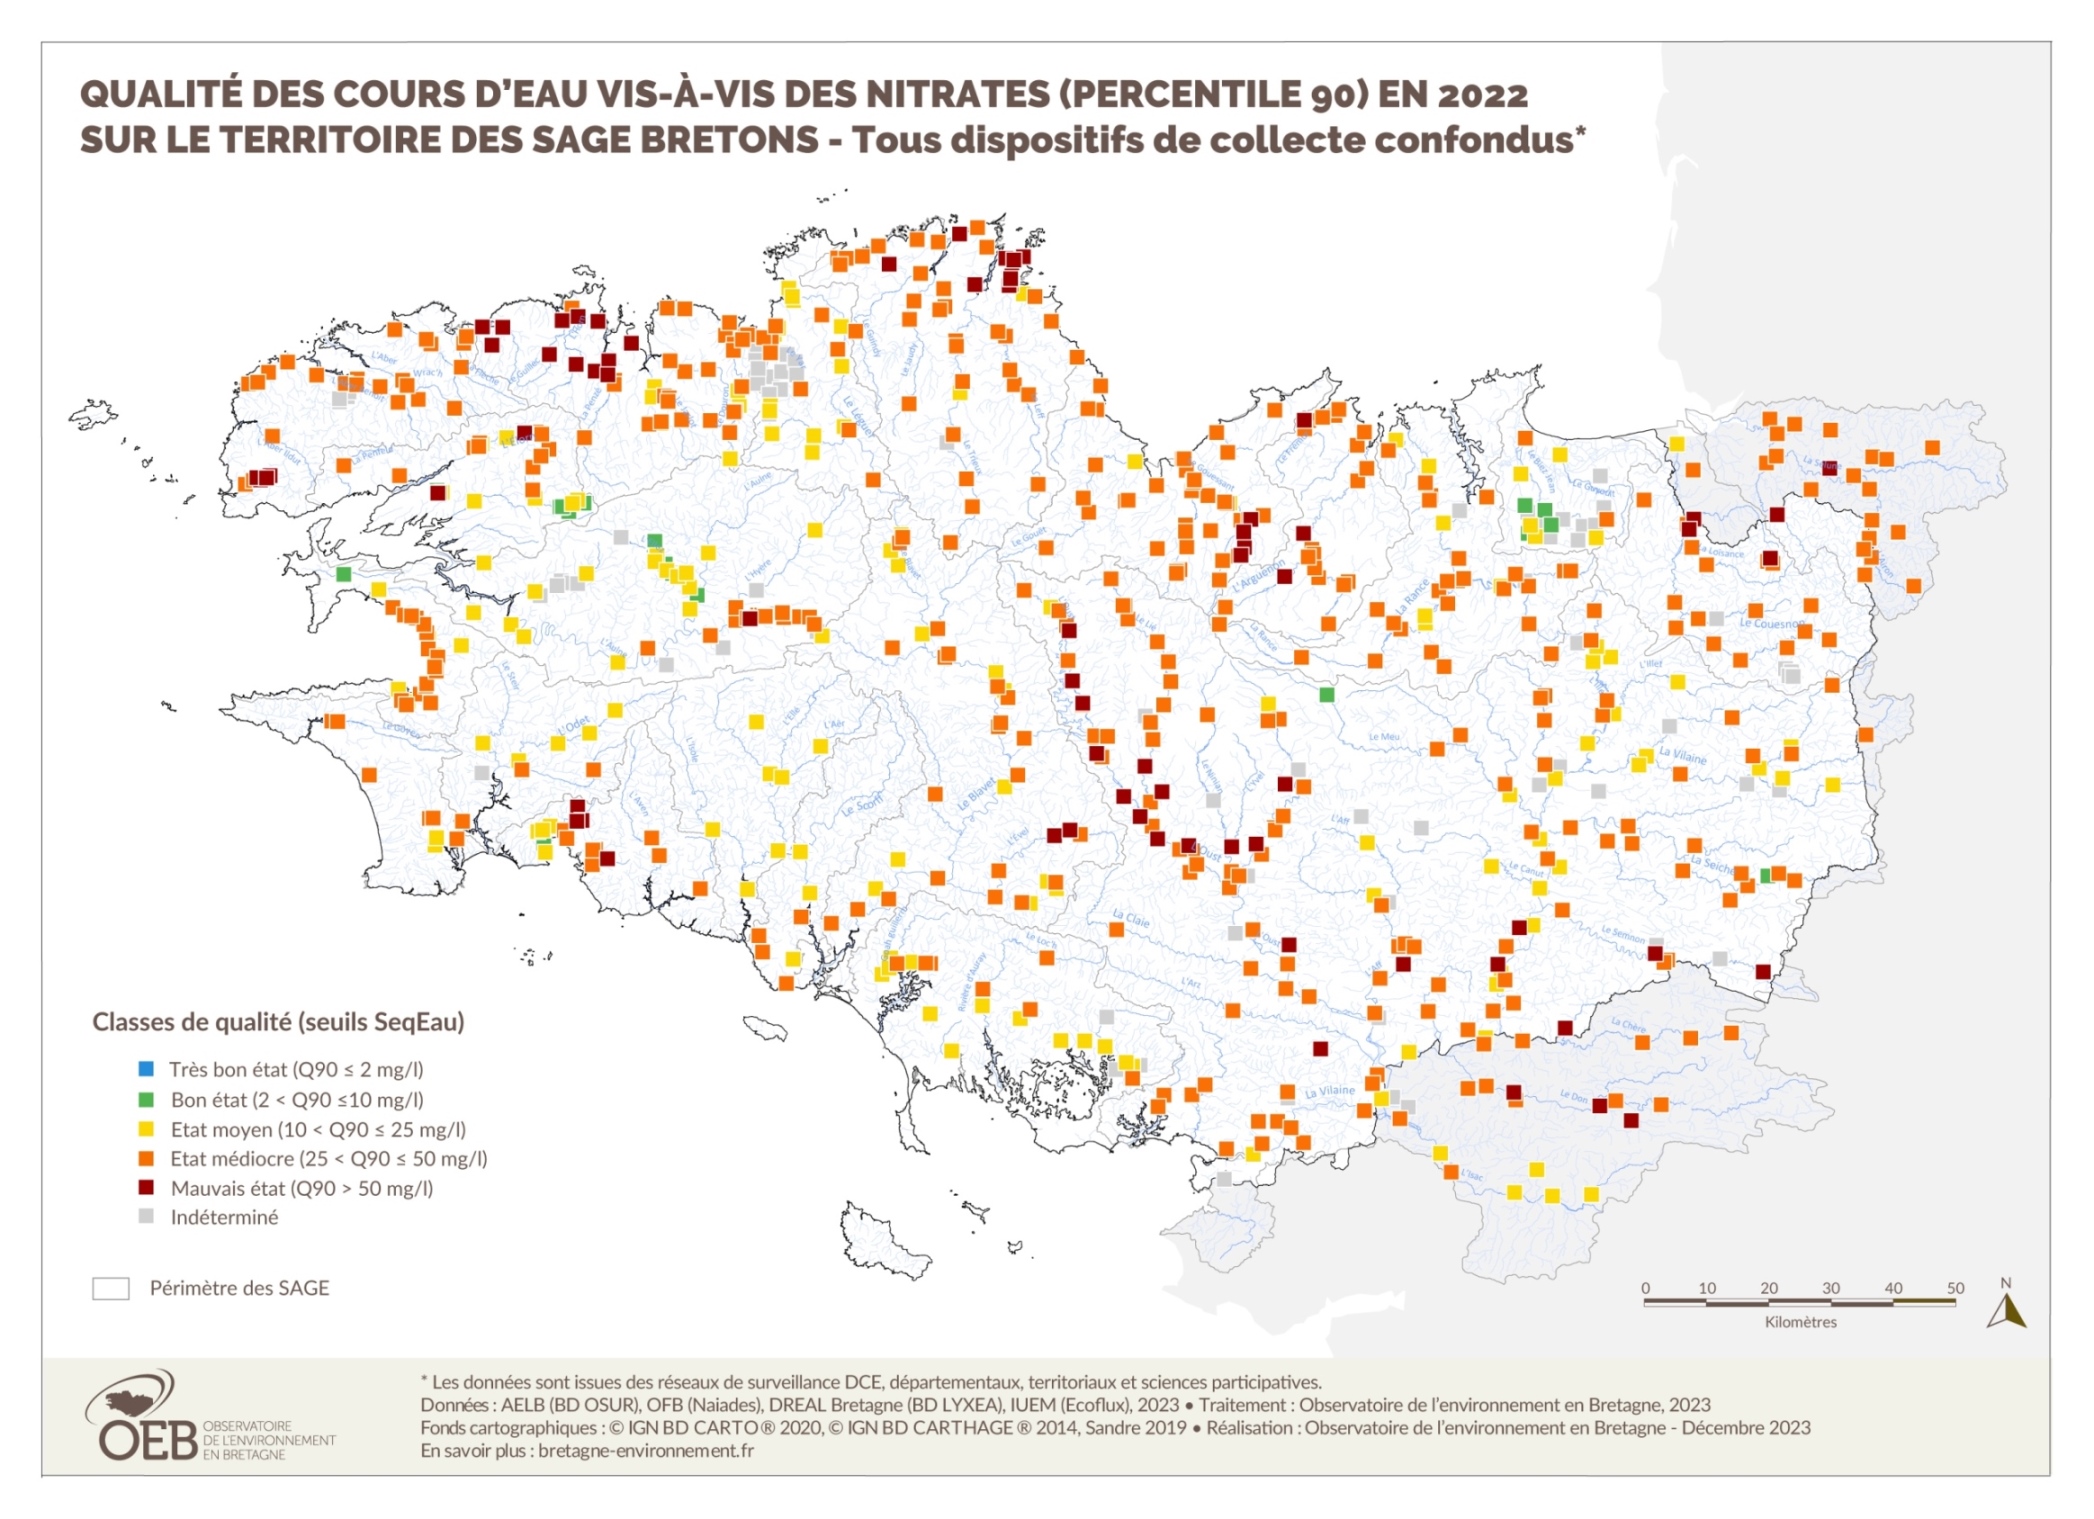 Qualité des cours d'eau bretons vis-à-vis des nitrates (Q90) en 2022